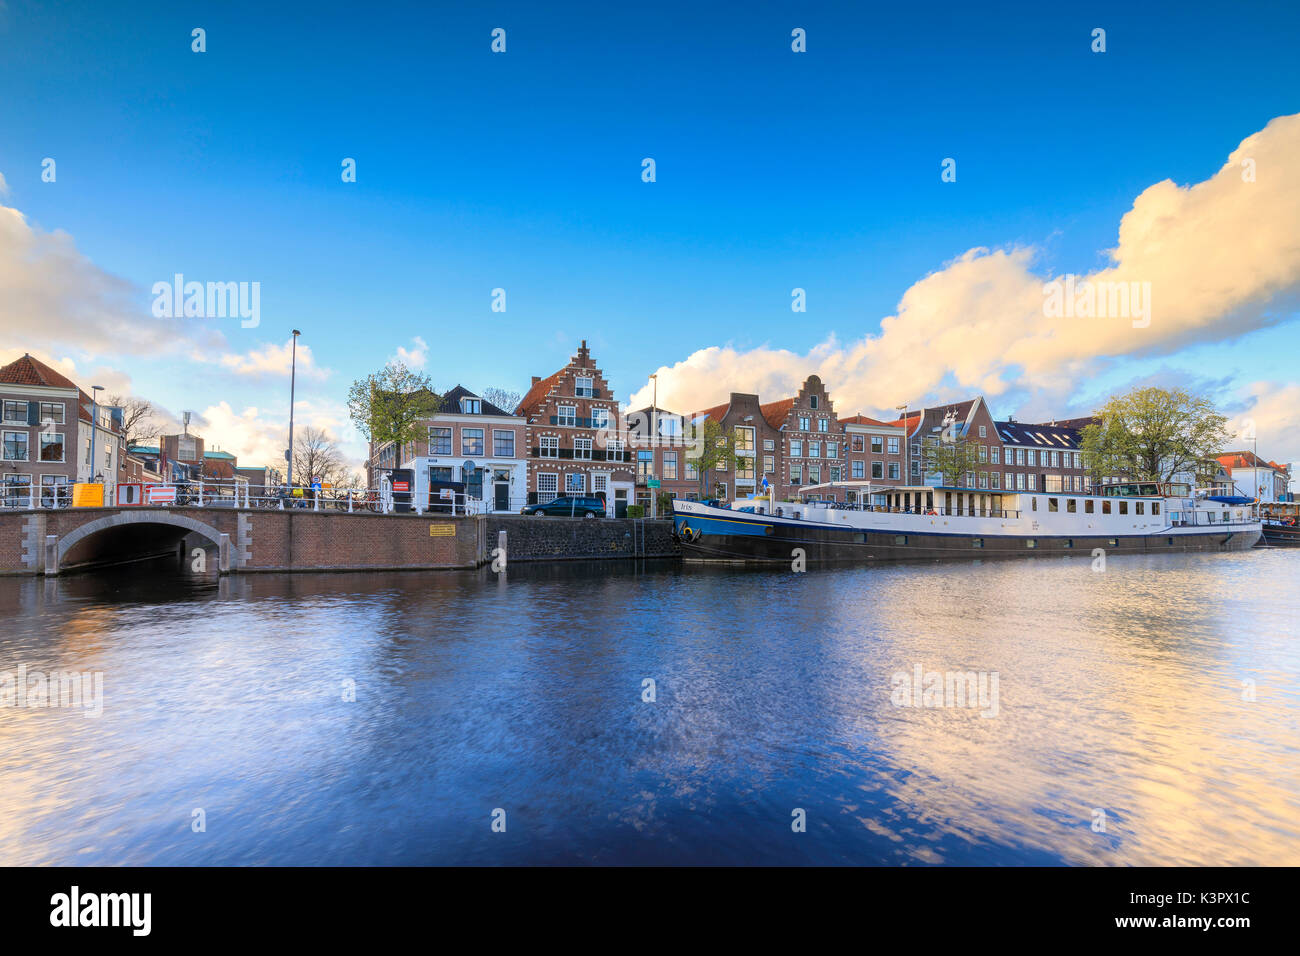 Ciel bleu et nuages sur les maisons qui se reflètent dans le canal de la rivière Spaarne Haarlem aux Pays-Bas Hollande du Nord Europe Banque D'Images